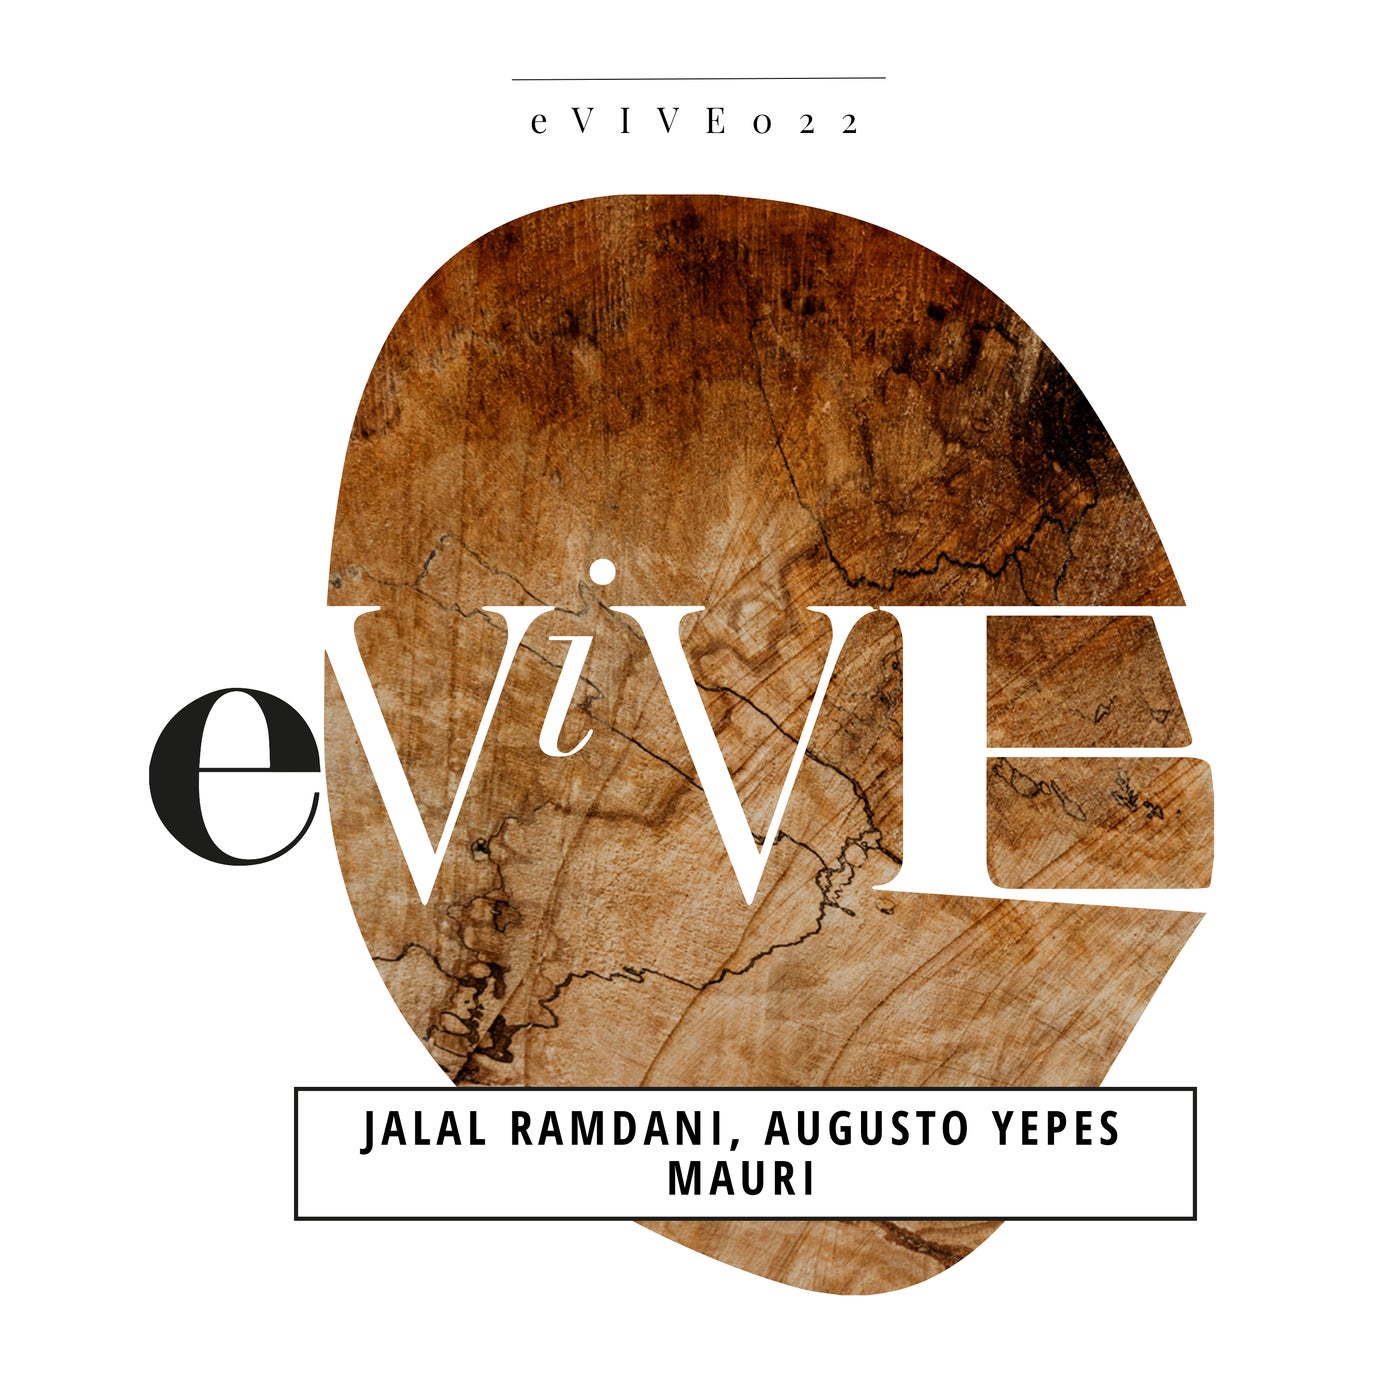 Augusto Yepes, Jalal Ramdani - Mauri on eViVE Records